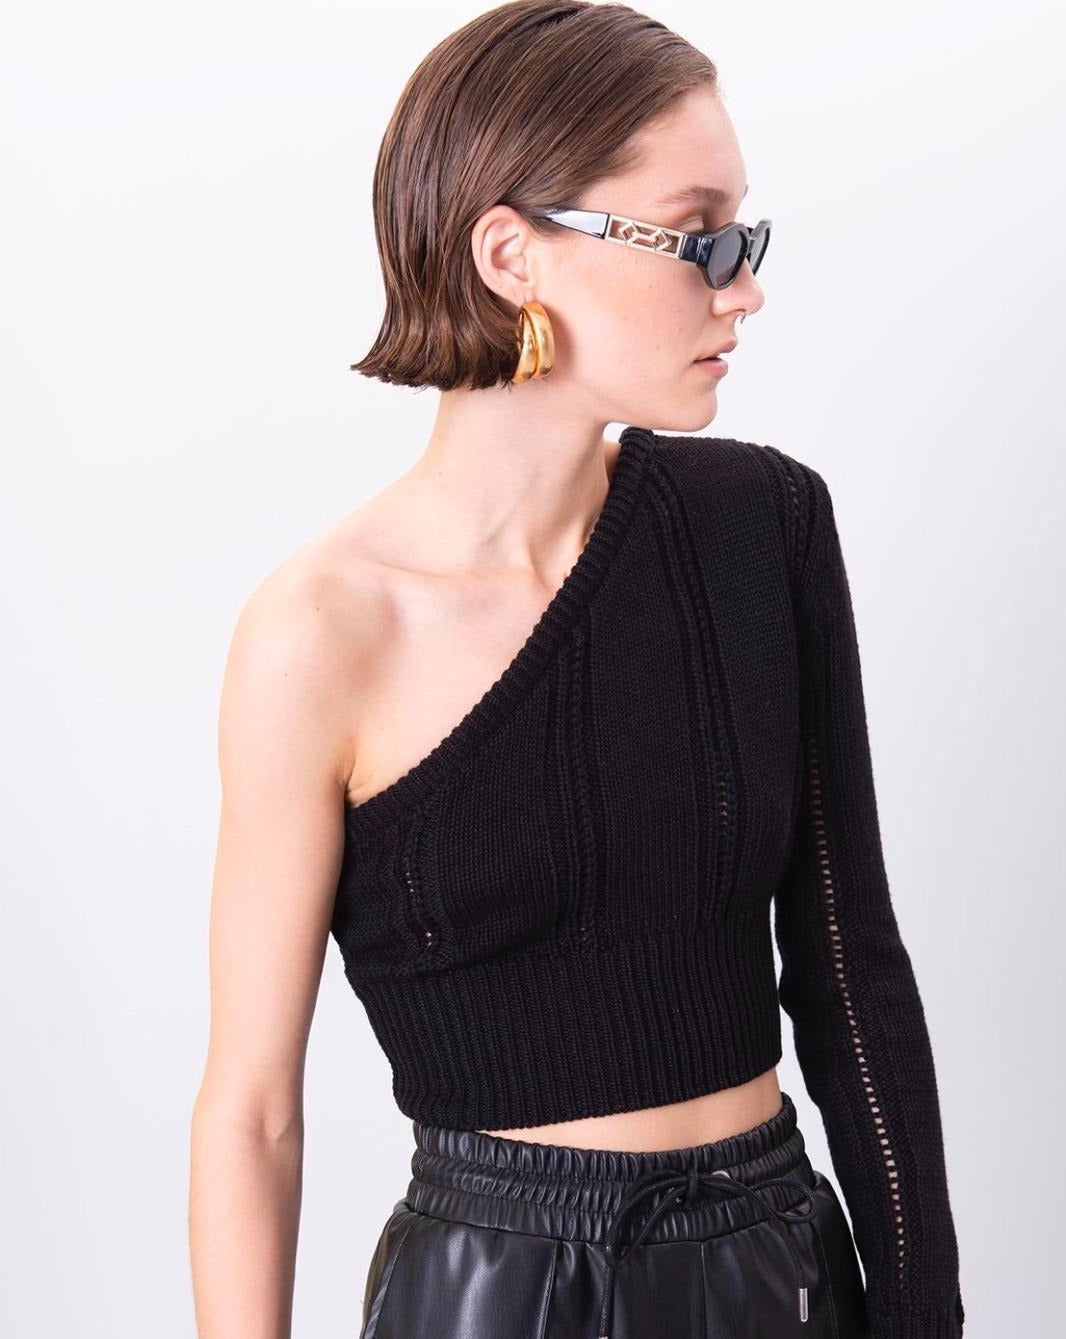 Дамски пуловер BELLA  https://bvseductive.com/products/дамски-пуловер-bella-2  100% акрил атрактивен къс дамски пуловер с един ръкав в черен цвят тренди предложение за вашата визия